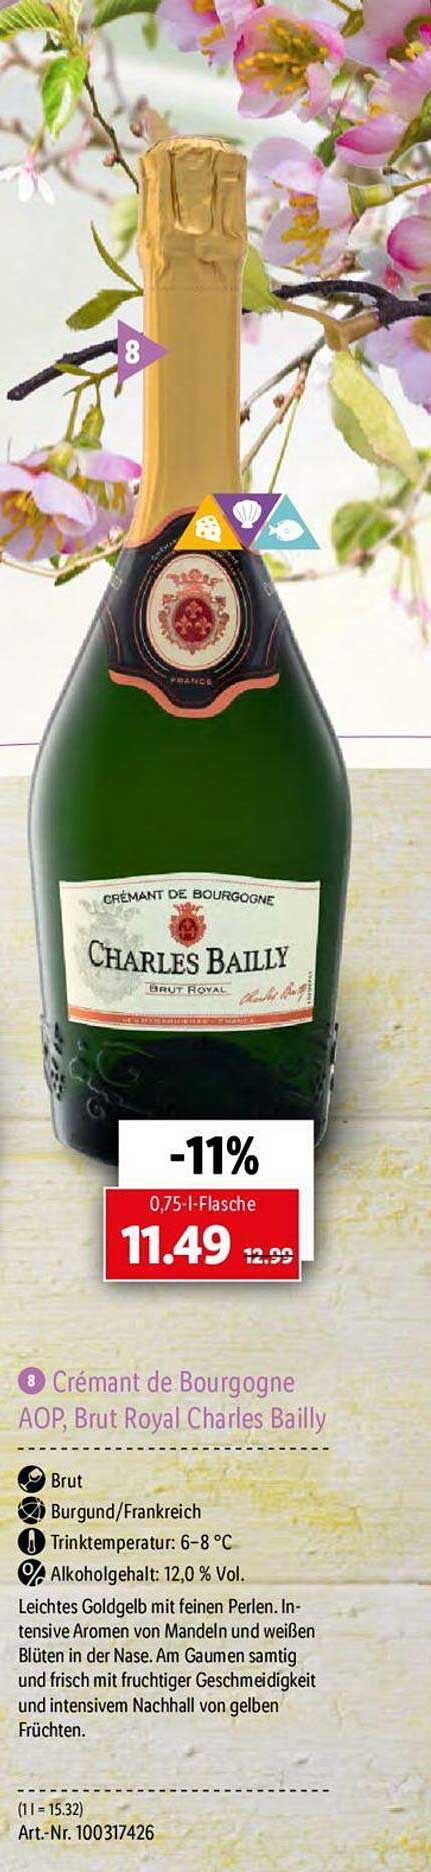 Cremant De Bourgogne Aop Charles bei Brut Royal Angebot Bailly Lidl